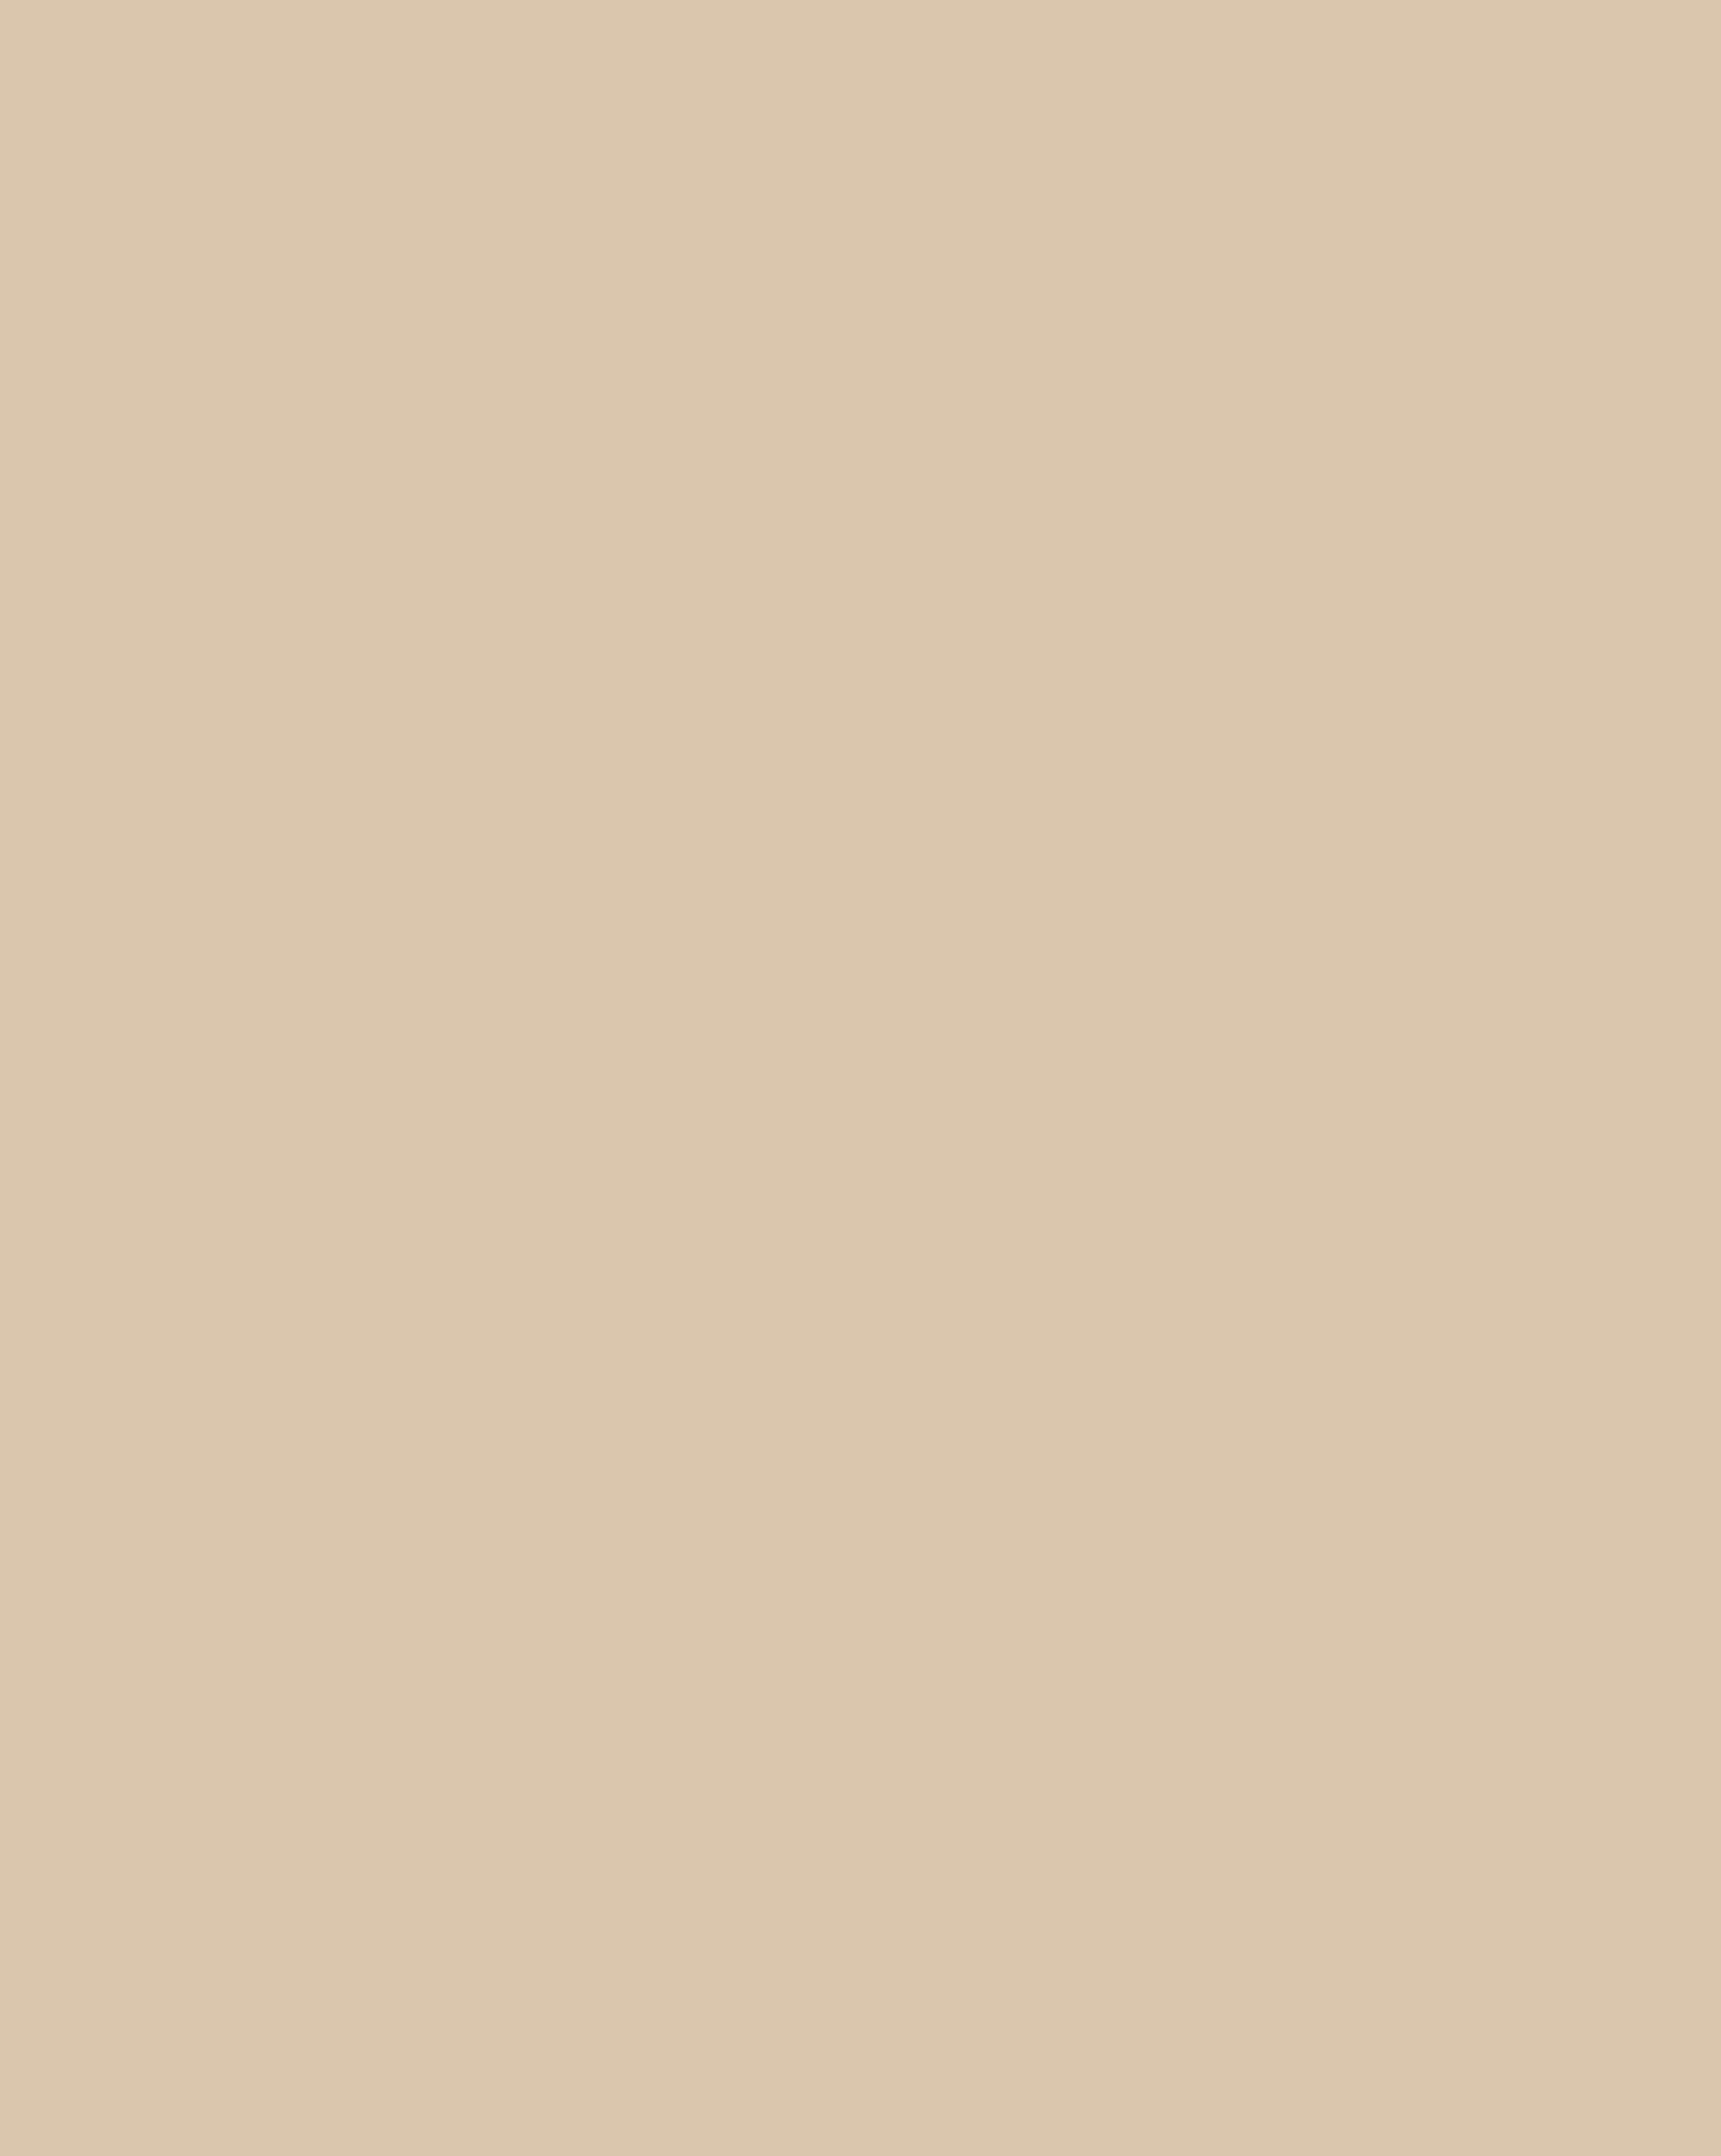 Препараты «Лактозинъ». Рекламный лист товарищества «Брокарь и К» в Москве. Около 1913. Алтайский государственный краеведческий музей, Барнаул